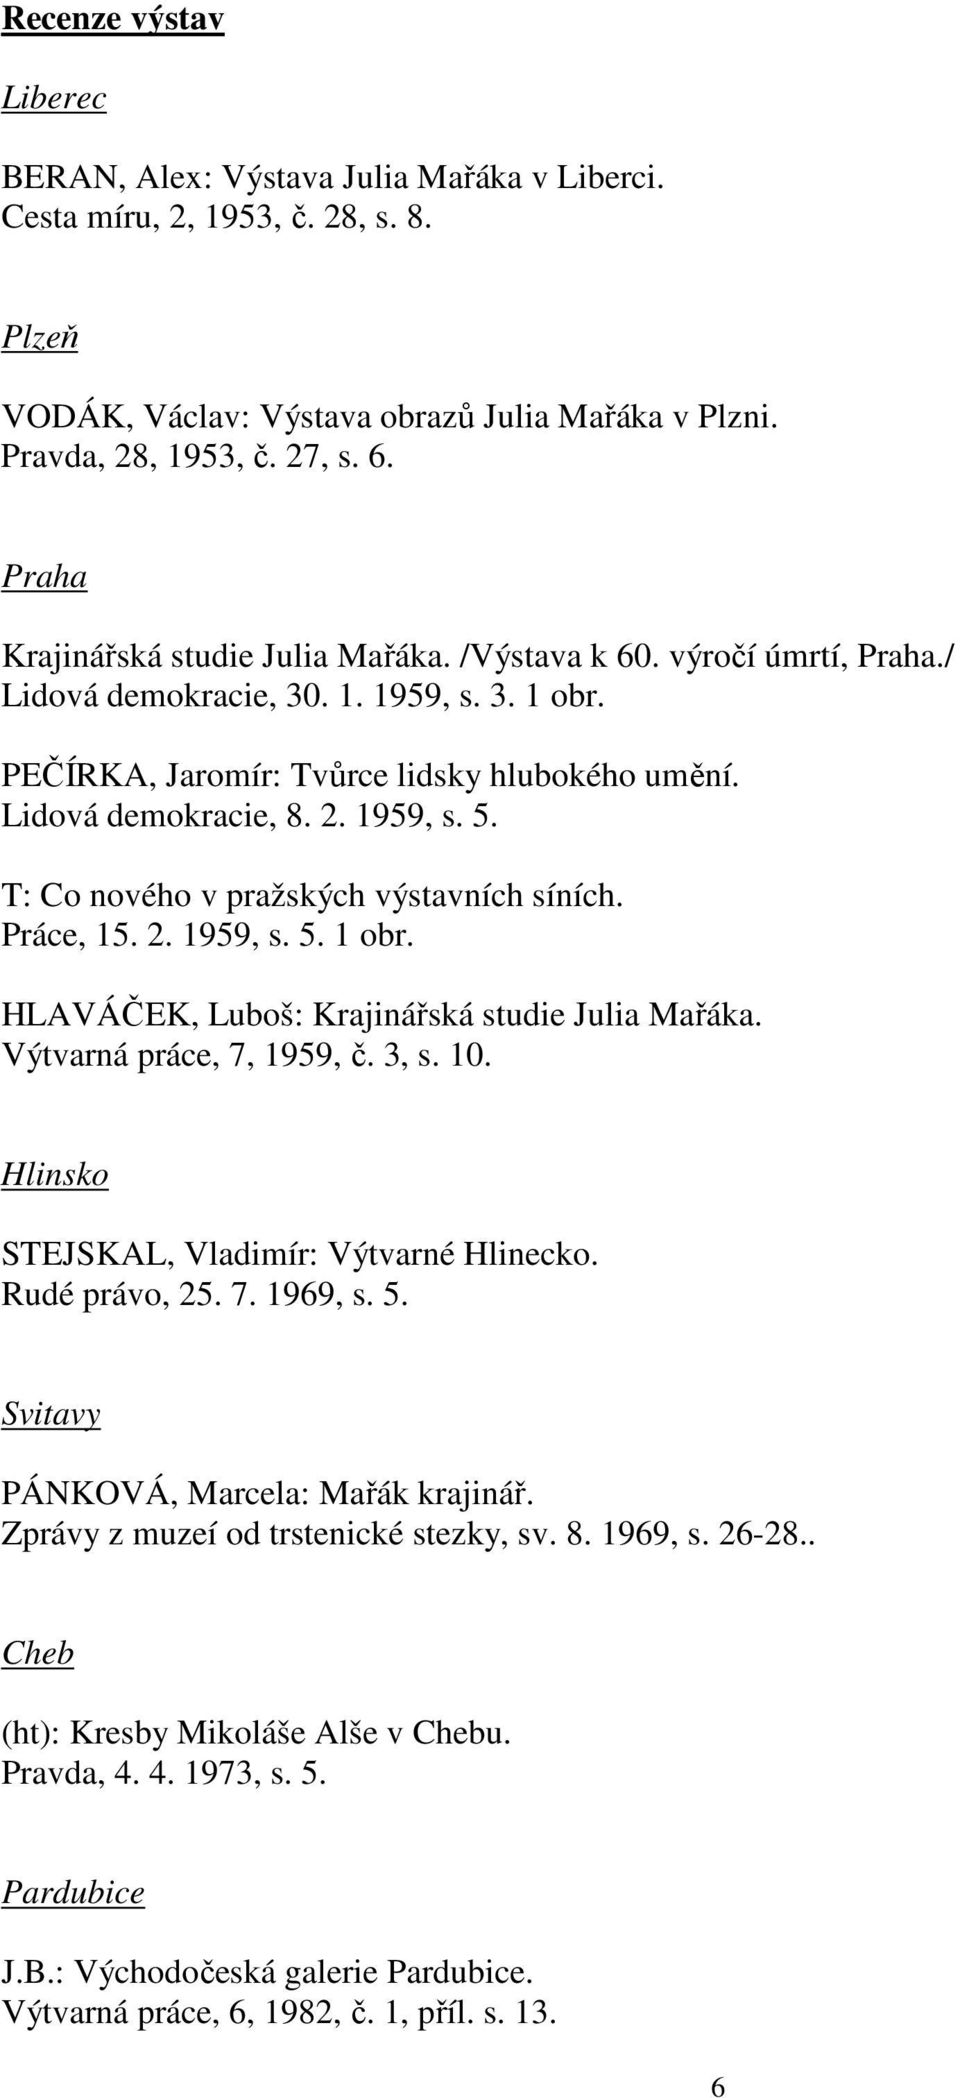 1959, s. 5. T: Co nového v pražských výstavních síních. Práce, 15. 2. 1959, s. 5. 1 obr. HLAVÁČEK, Luboš: Krajinářská studie Julia Mařáka. Výtvarná práce, 7, 1959, č. 3, s. 10.